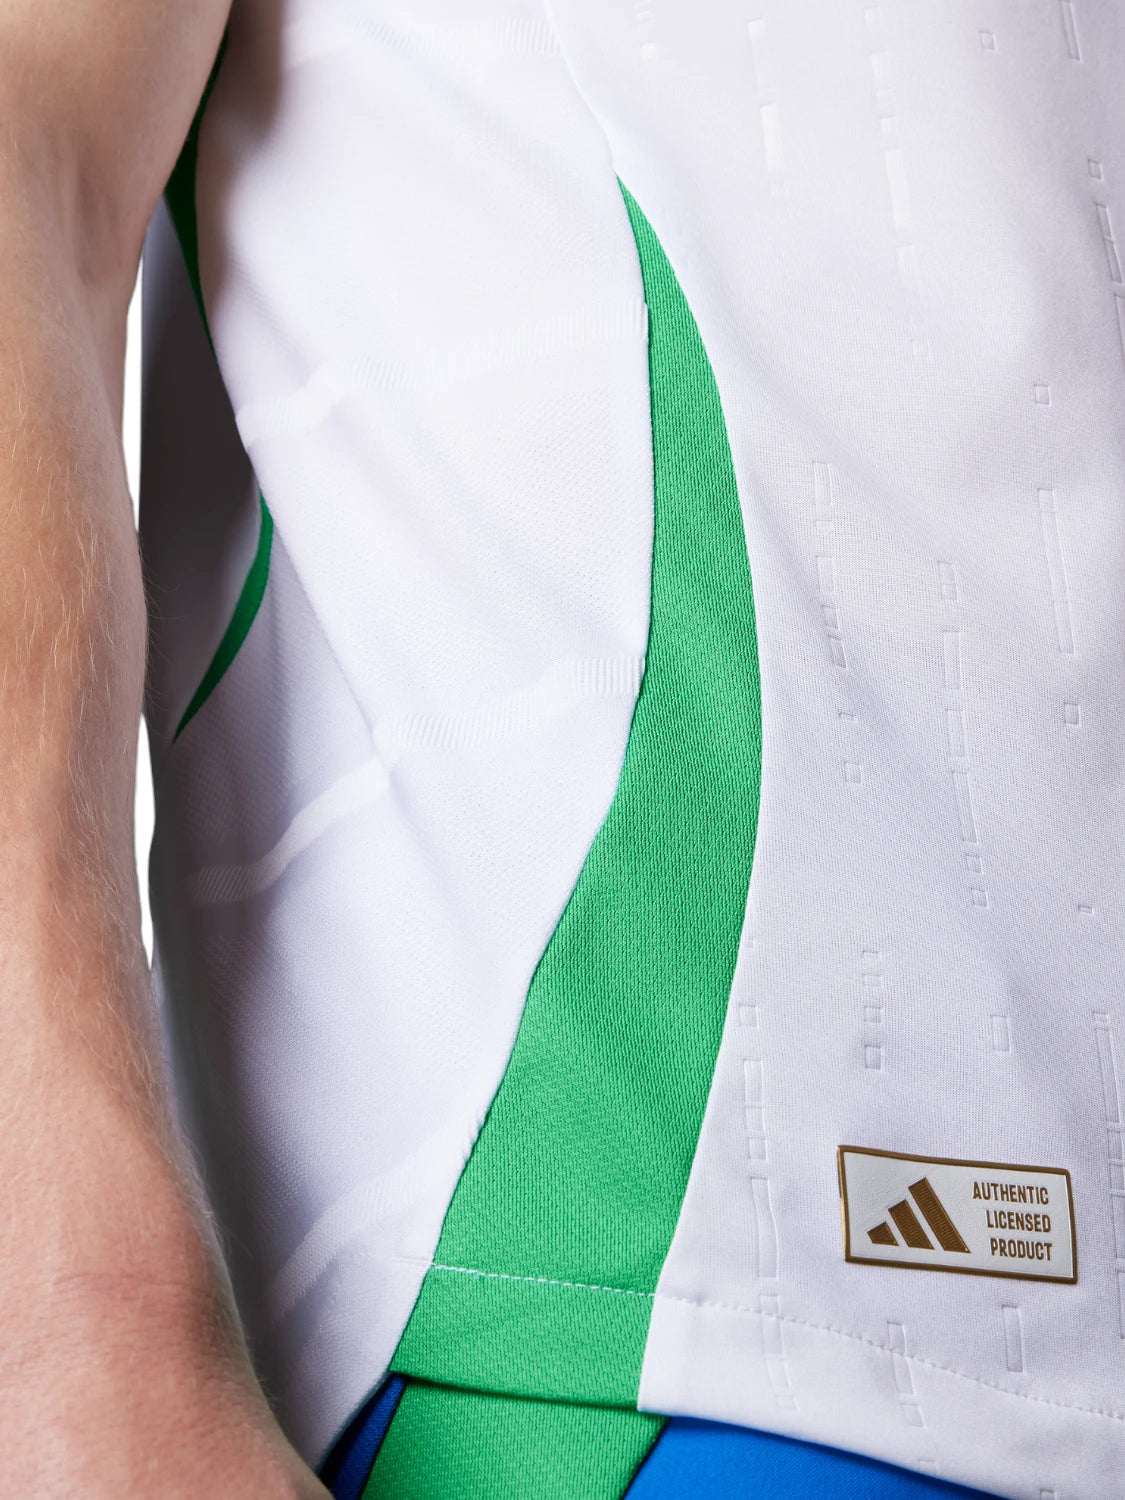 Maglia Italia Away Authentic 2024 - Ufficiale da Gioco-Adidas Originals-T-shirt-Vittorio Citro Boutique